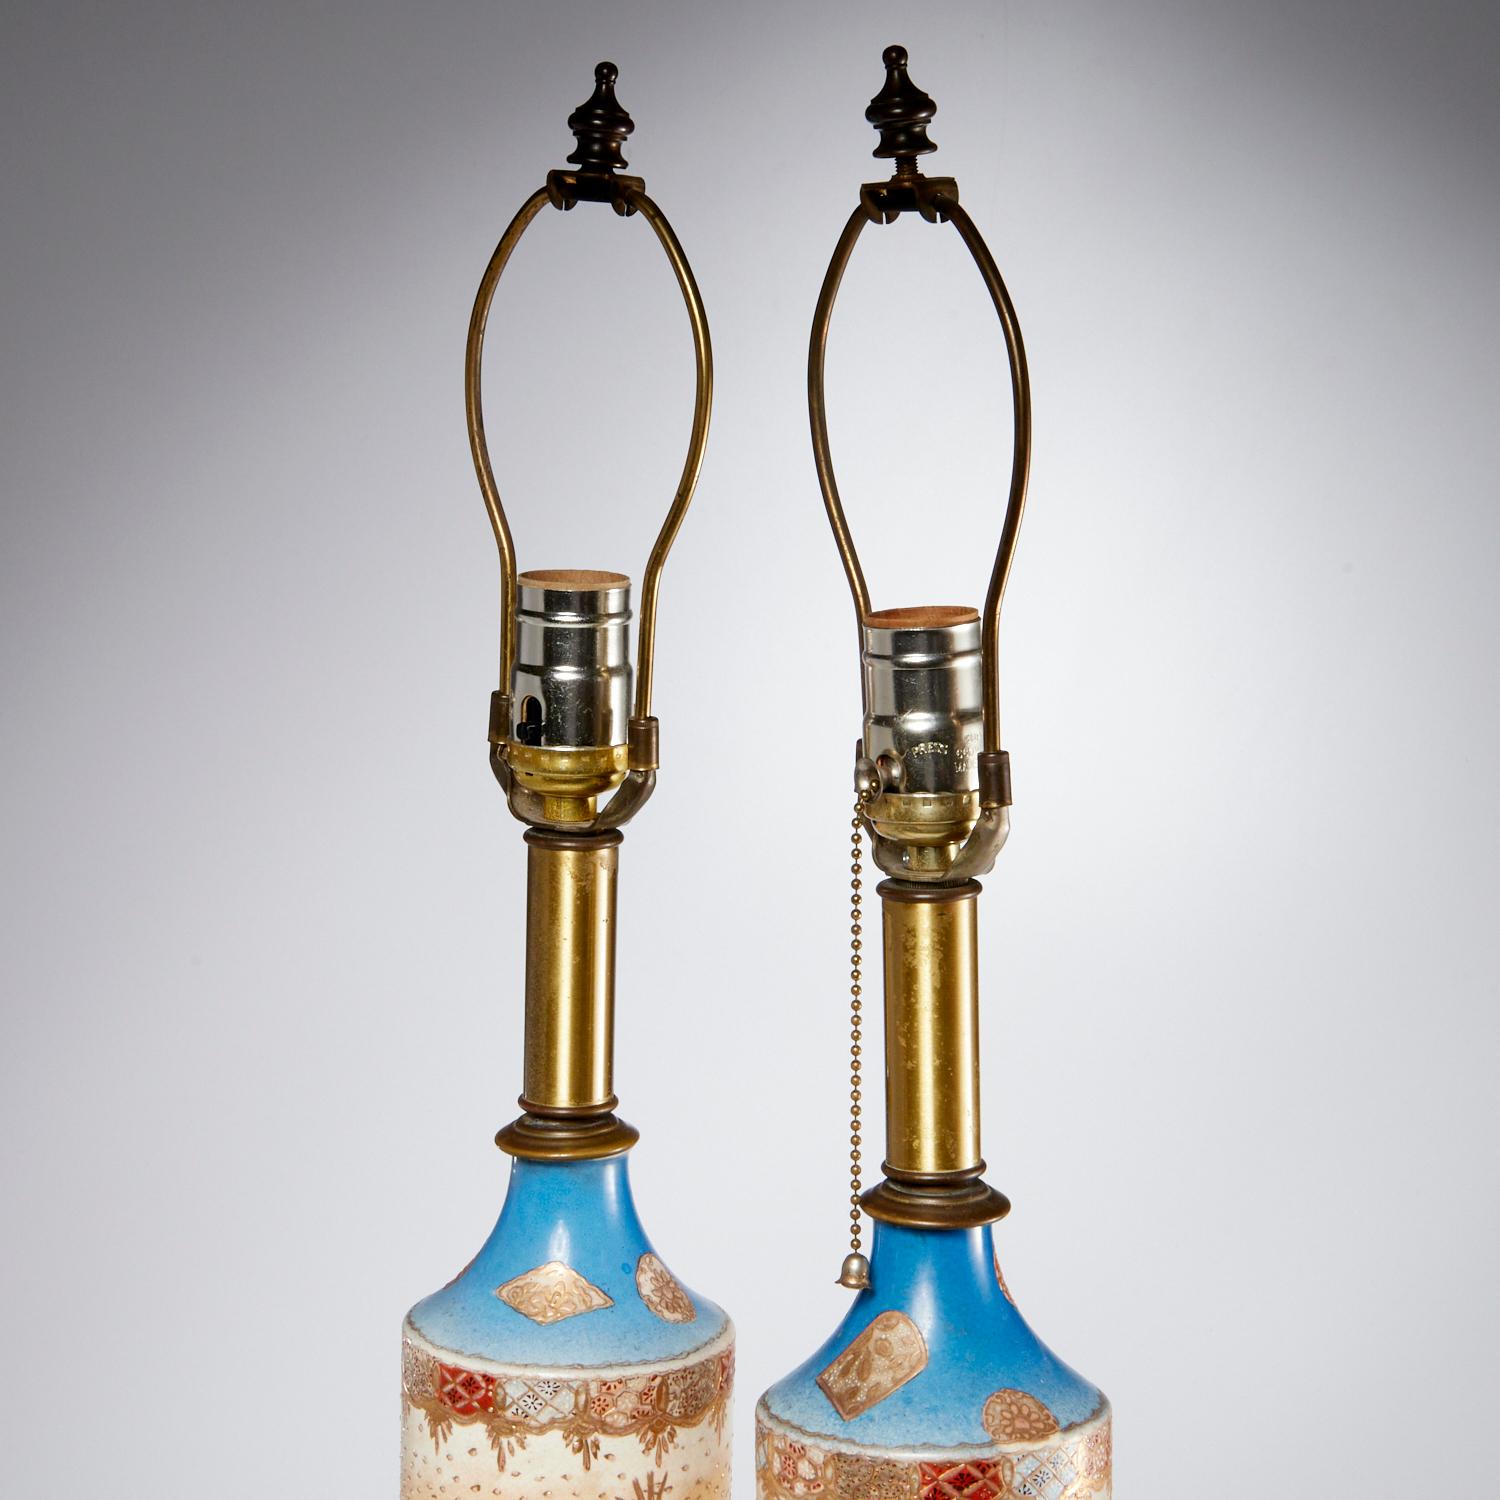 Paar japanische Satsuma-Vasen-Tischlampen aus dem späten 19. Jahrhundert, dekoriert mit japanischen Kriegern, mit floralen und goldenen Akzenten. Möglicherweise Meiji-Zeit. Dieses Paar säulenförmiger Lampen mit einem Sockel, einer Fassung und einer